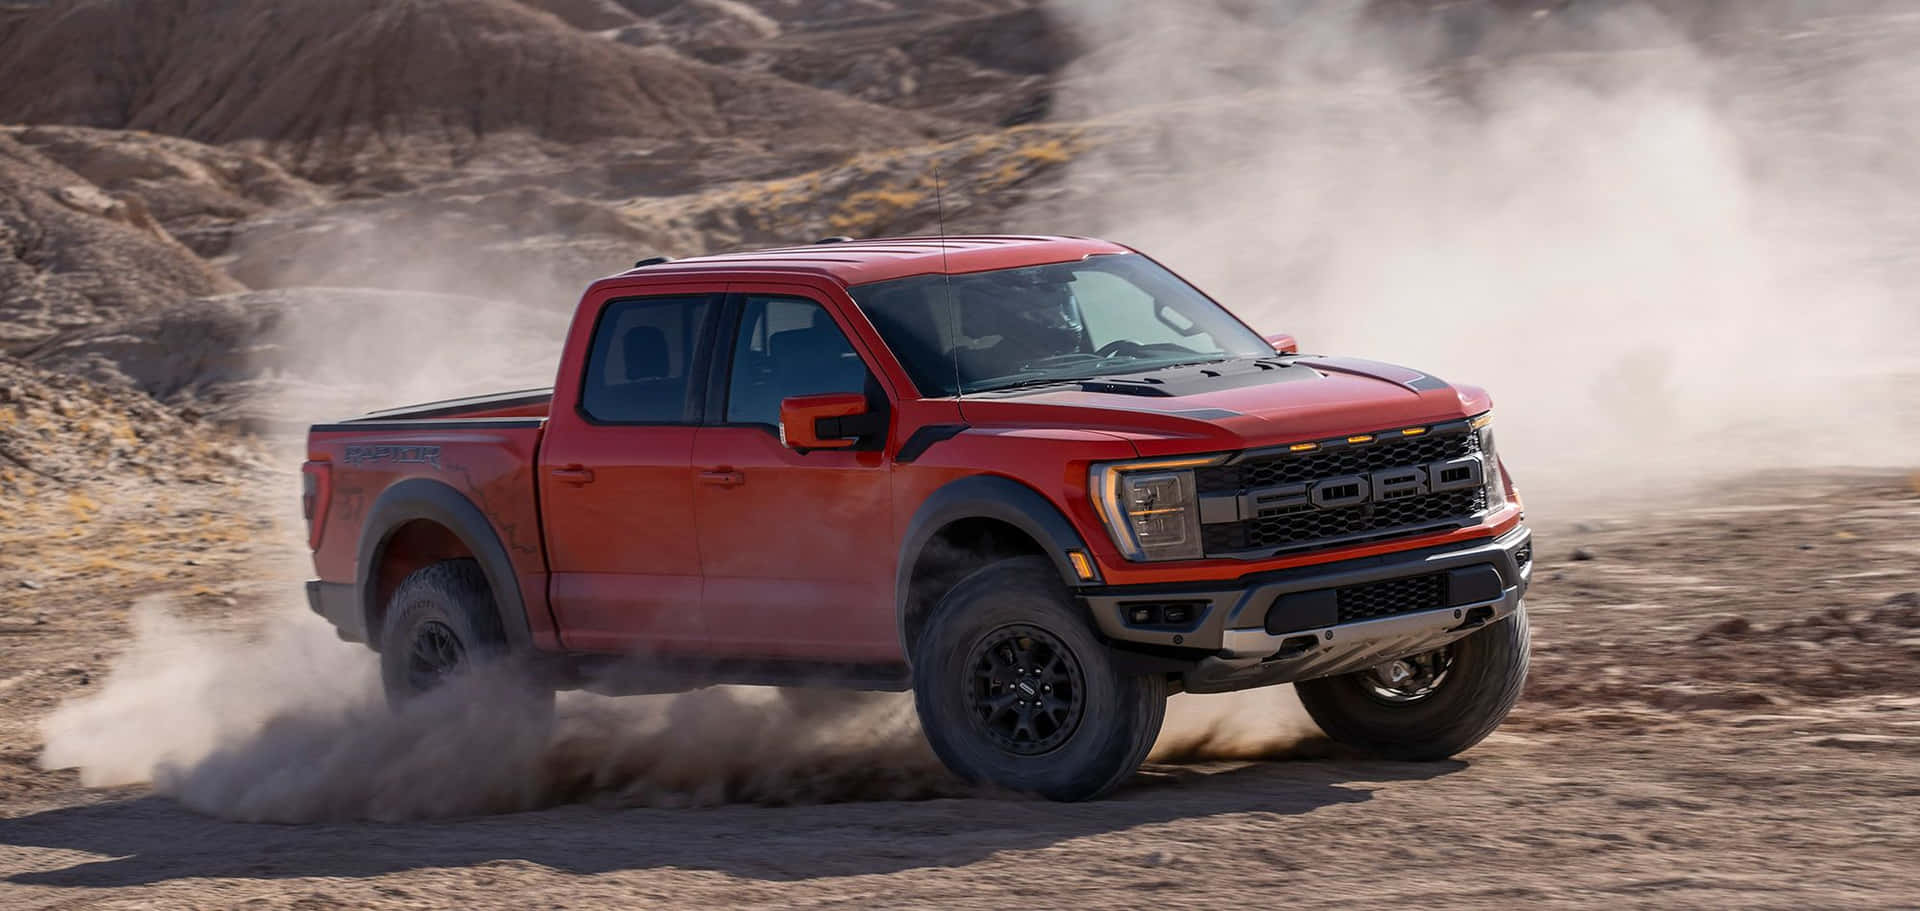 Derrote 2019 Ford F-150 Rambo Fährt Durch Die Wüste. Wallpaper